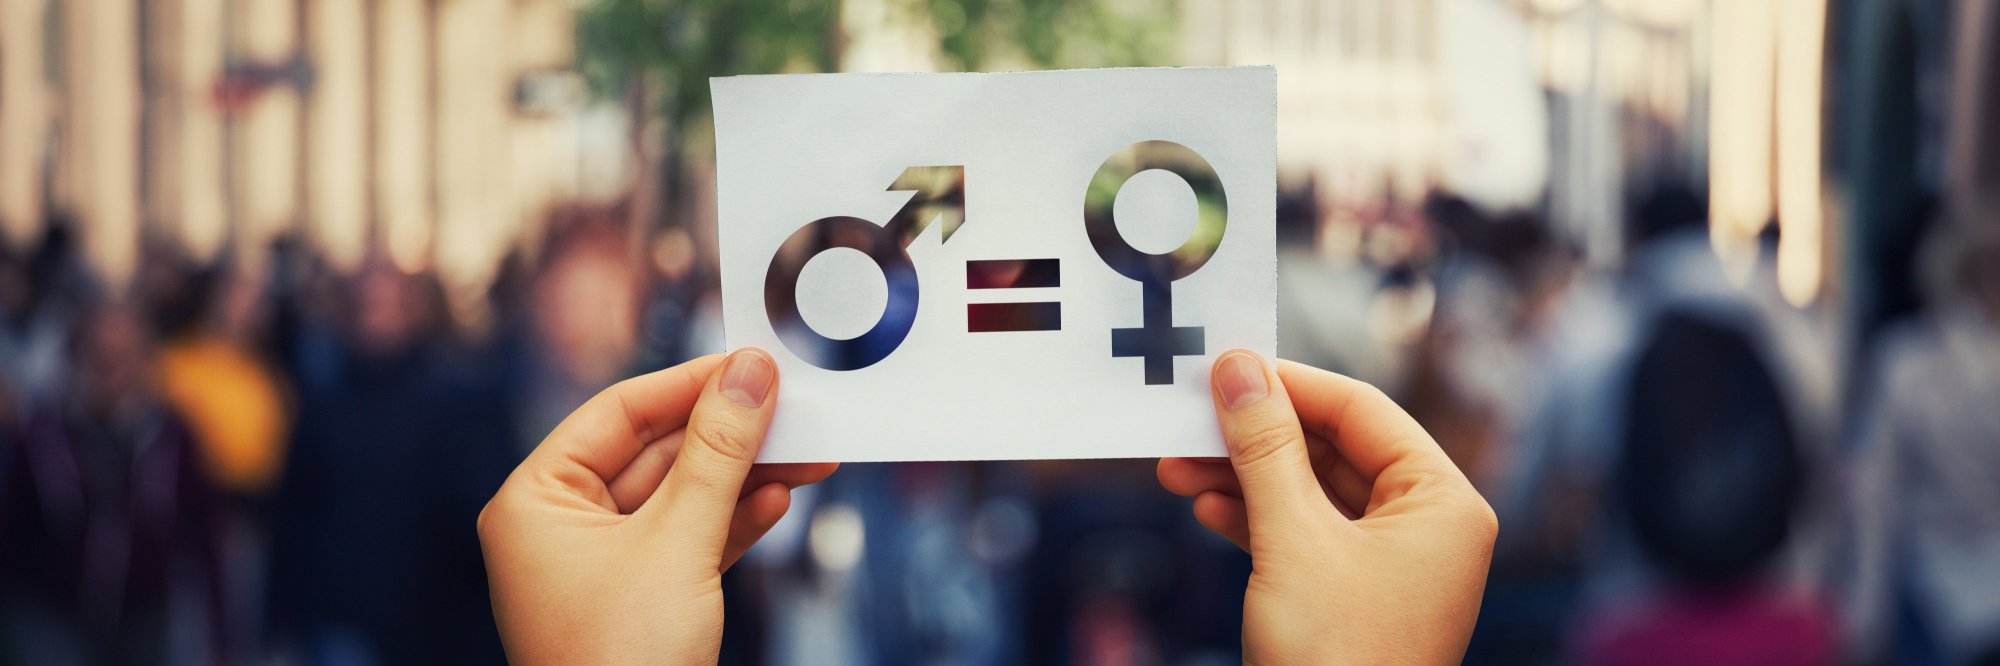 Promoviendo la Equidad de Género a través del Dialogo Social